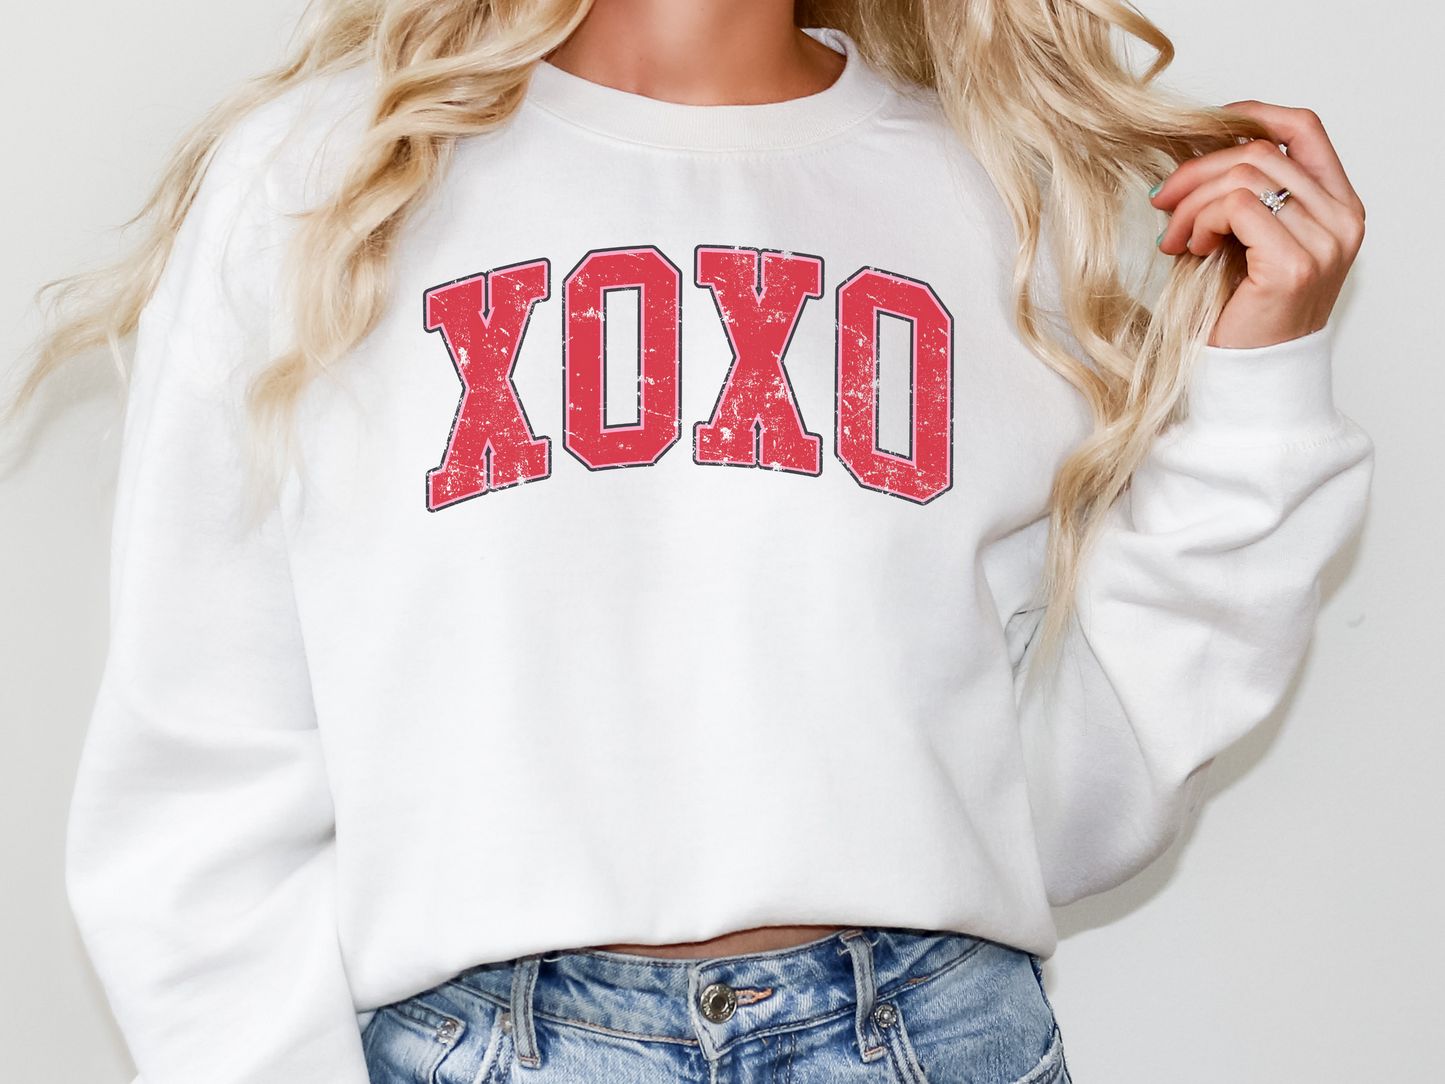 XOXO Women's Sweatshirt